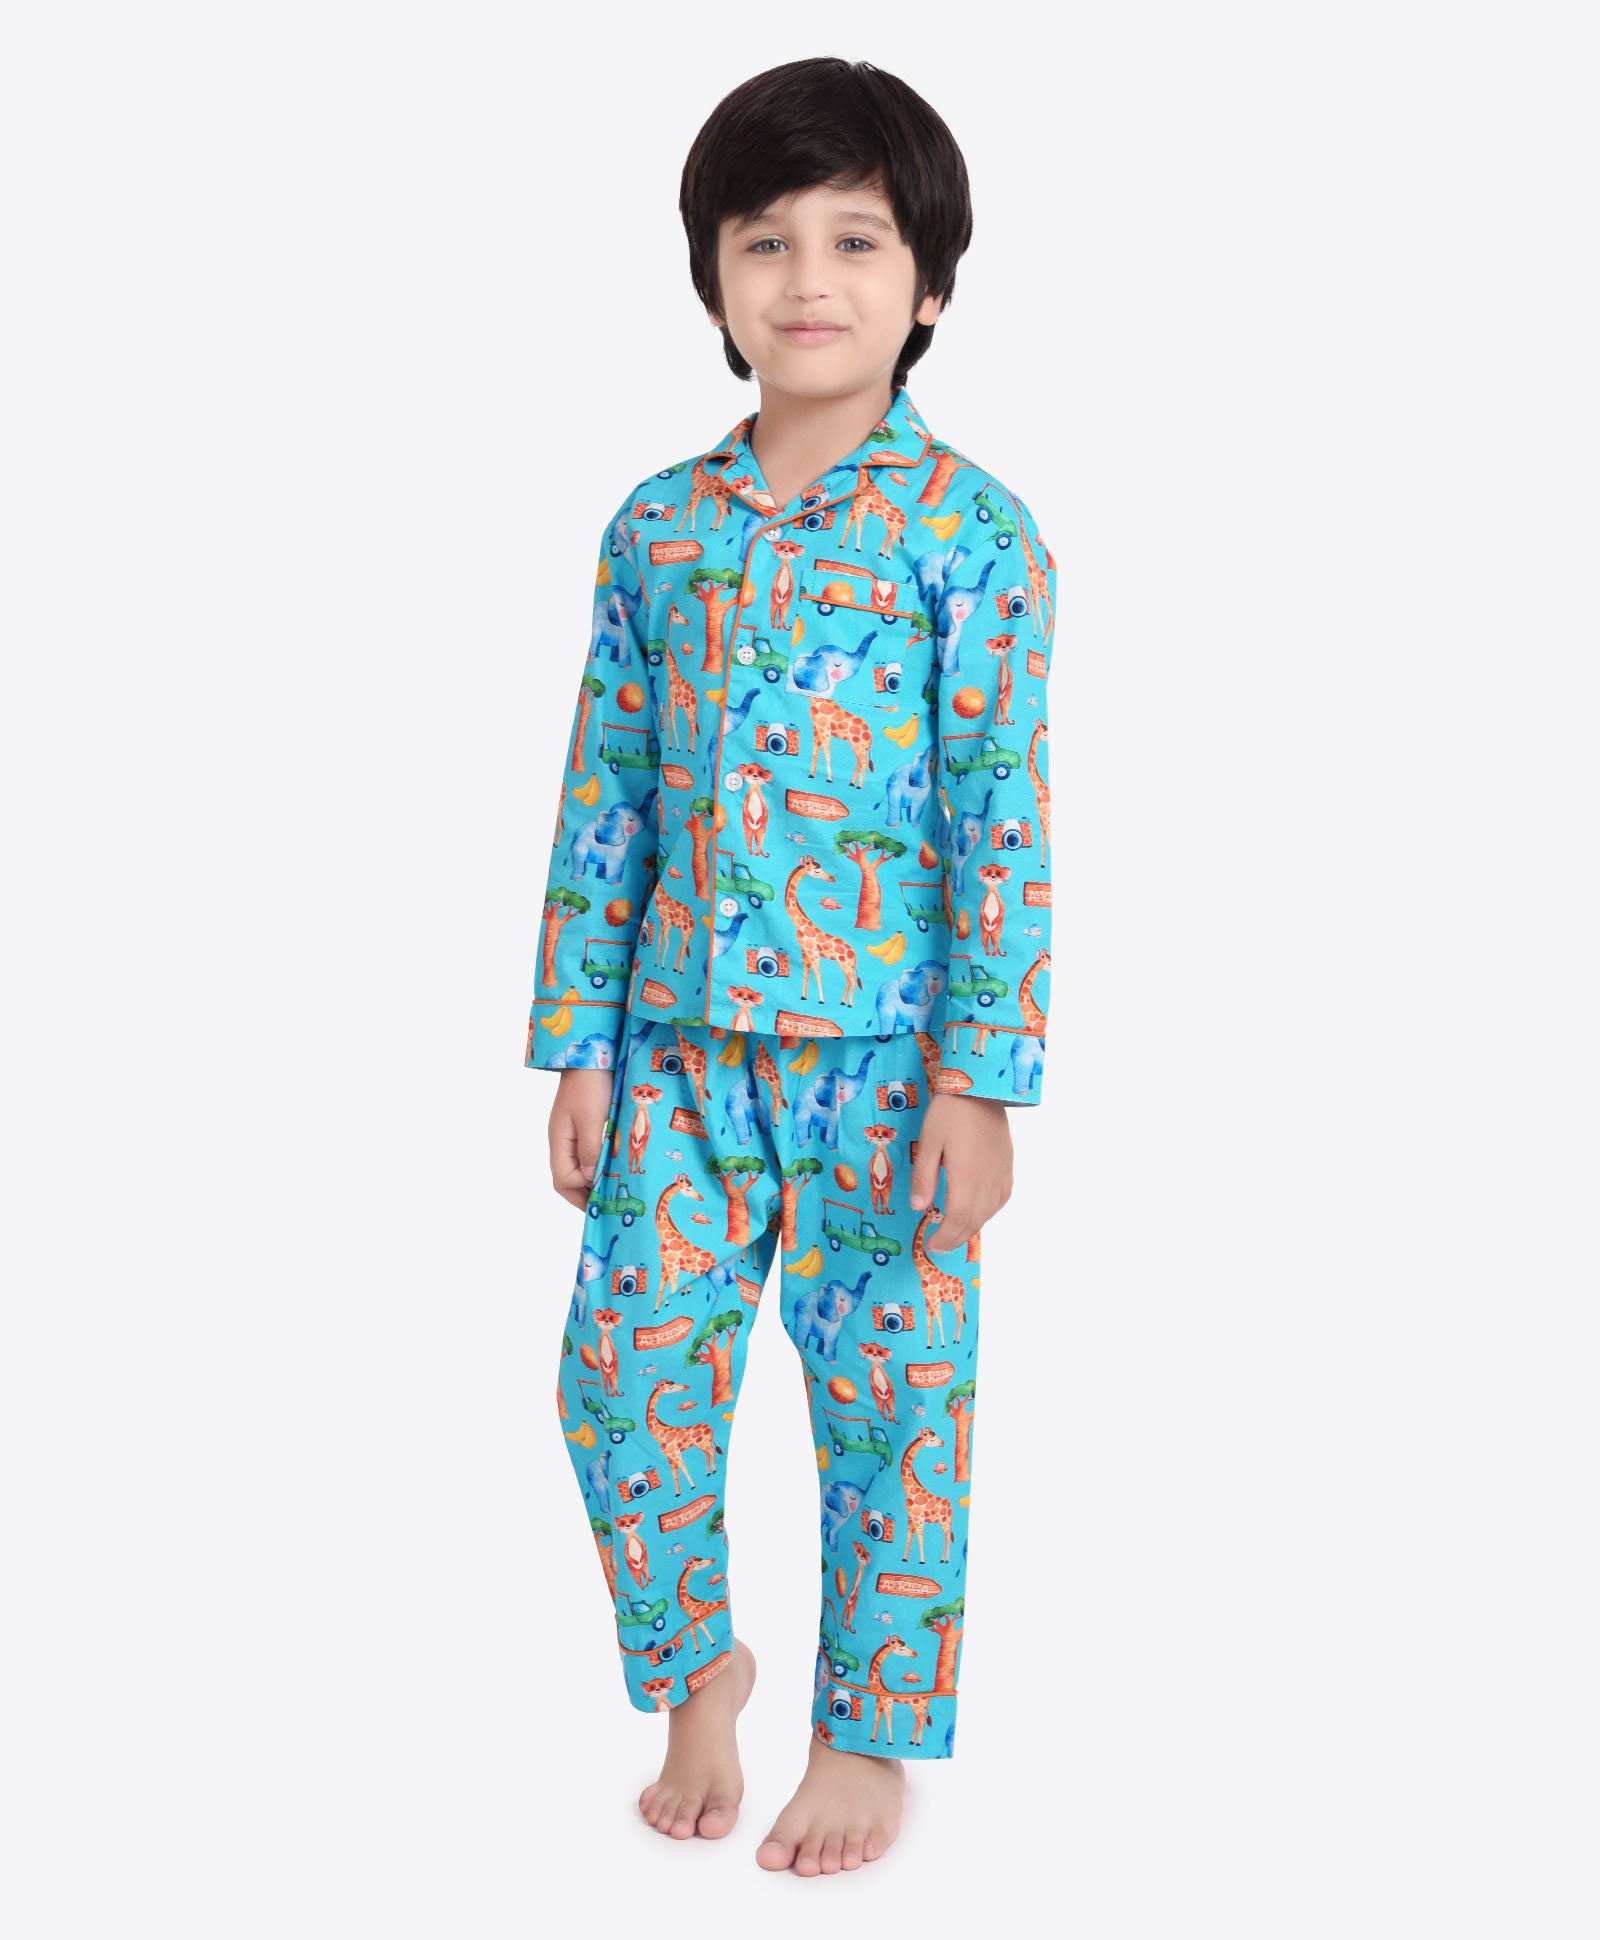 Sleepover Pajamas, oliver + s, size 7 | Boys night dress, Kids outfits  girls, Kids sleepwear